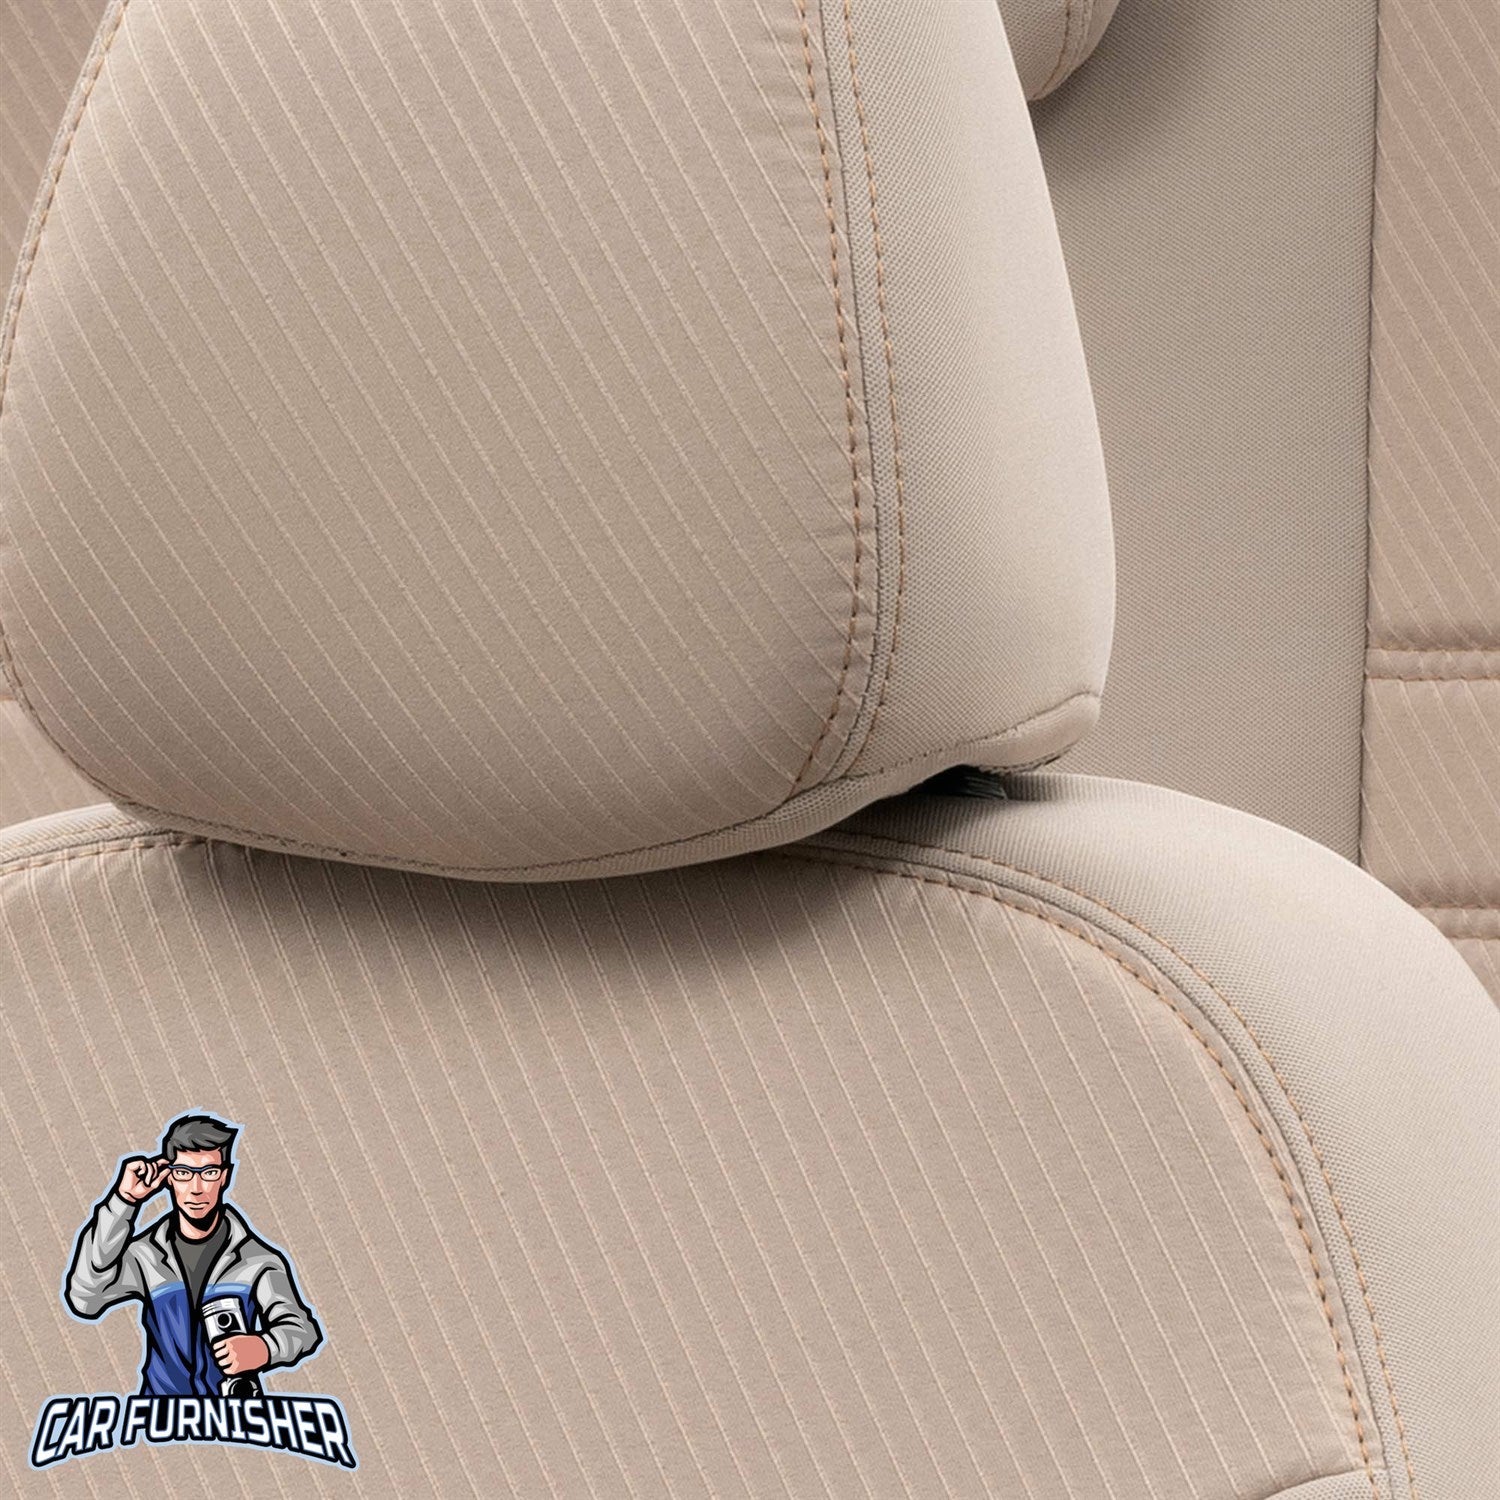 Mercedes B Class Seat Covers Original Jacquard Design Dark Beige Jacquard Fabric